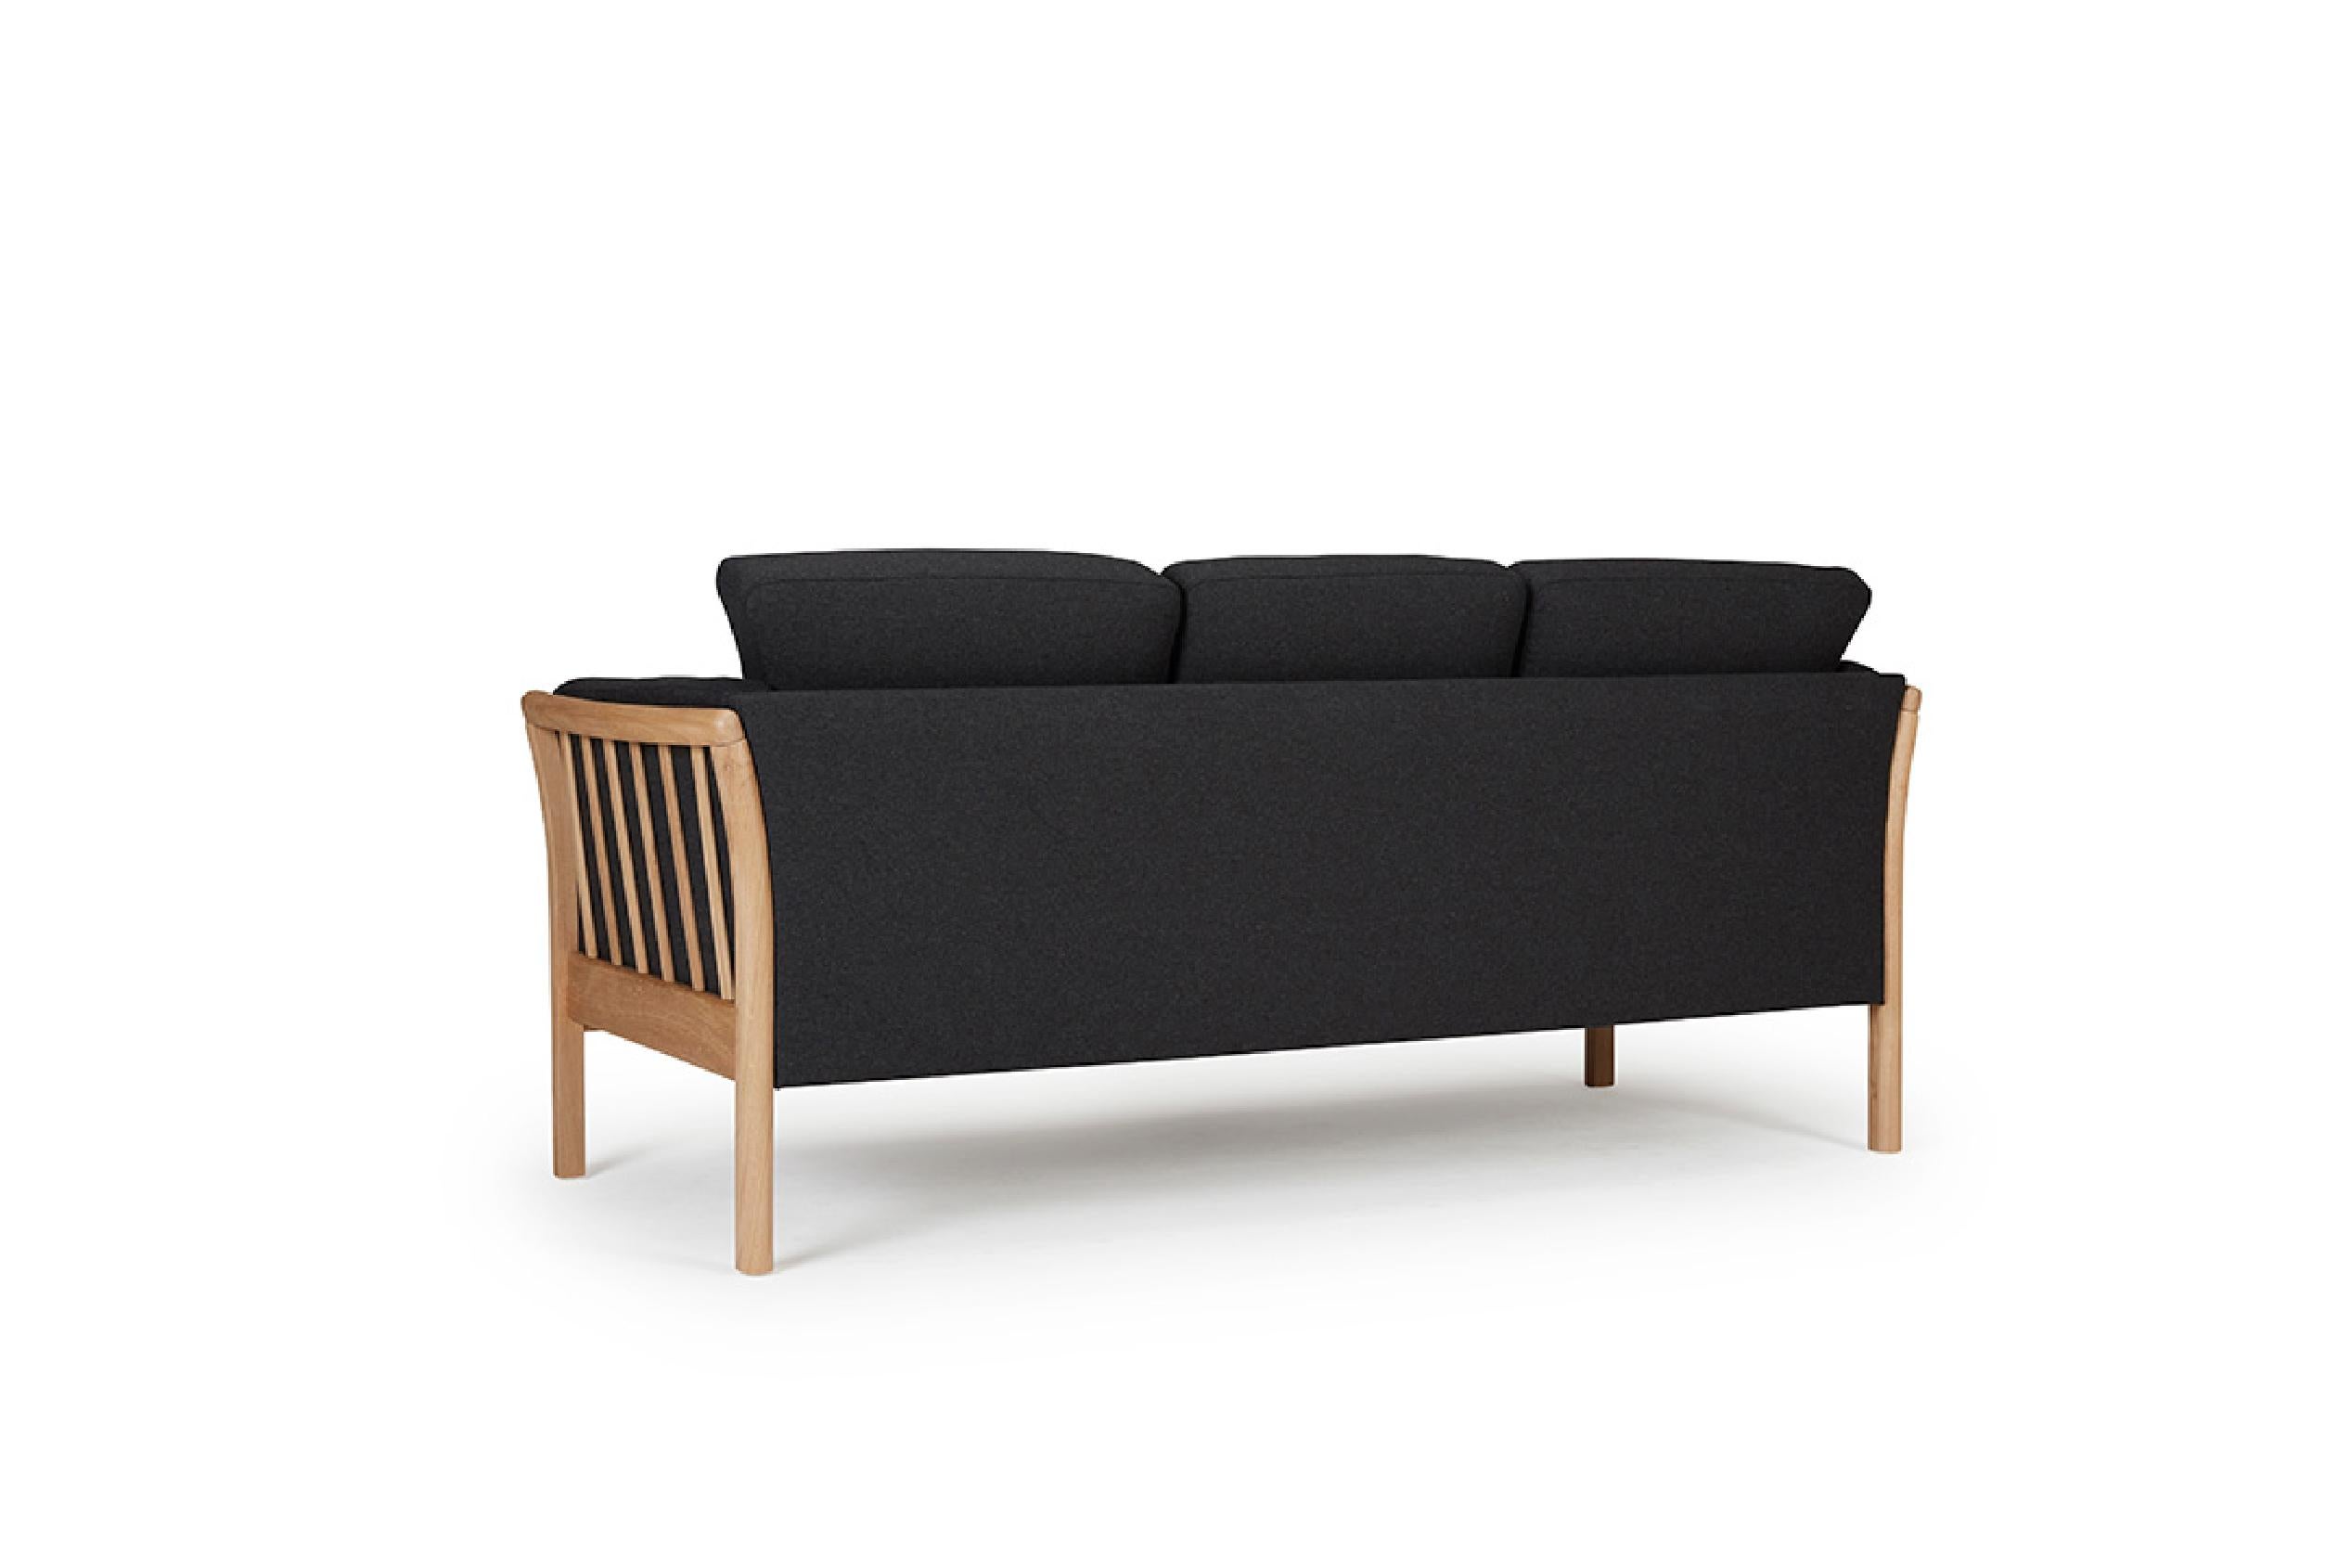 Das Oscar 3-Sitzer-Sofa fängt die Essenz des klassischen skandinavisch-modernen Designs aus der Mitte des Jahrhunderts ein. Dieses OEM-Produkt bietet eine Reihe von Holzoberflächen für die Beine und eine Vielzahl von Stoff- oder Lederbezügen. Er